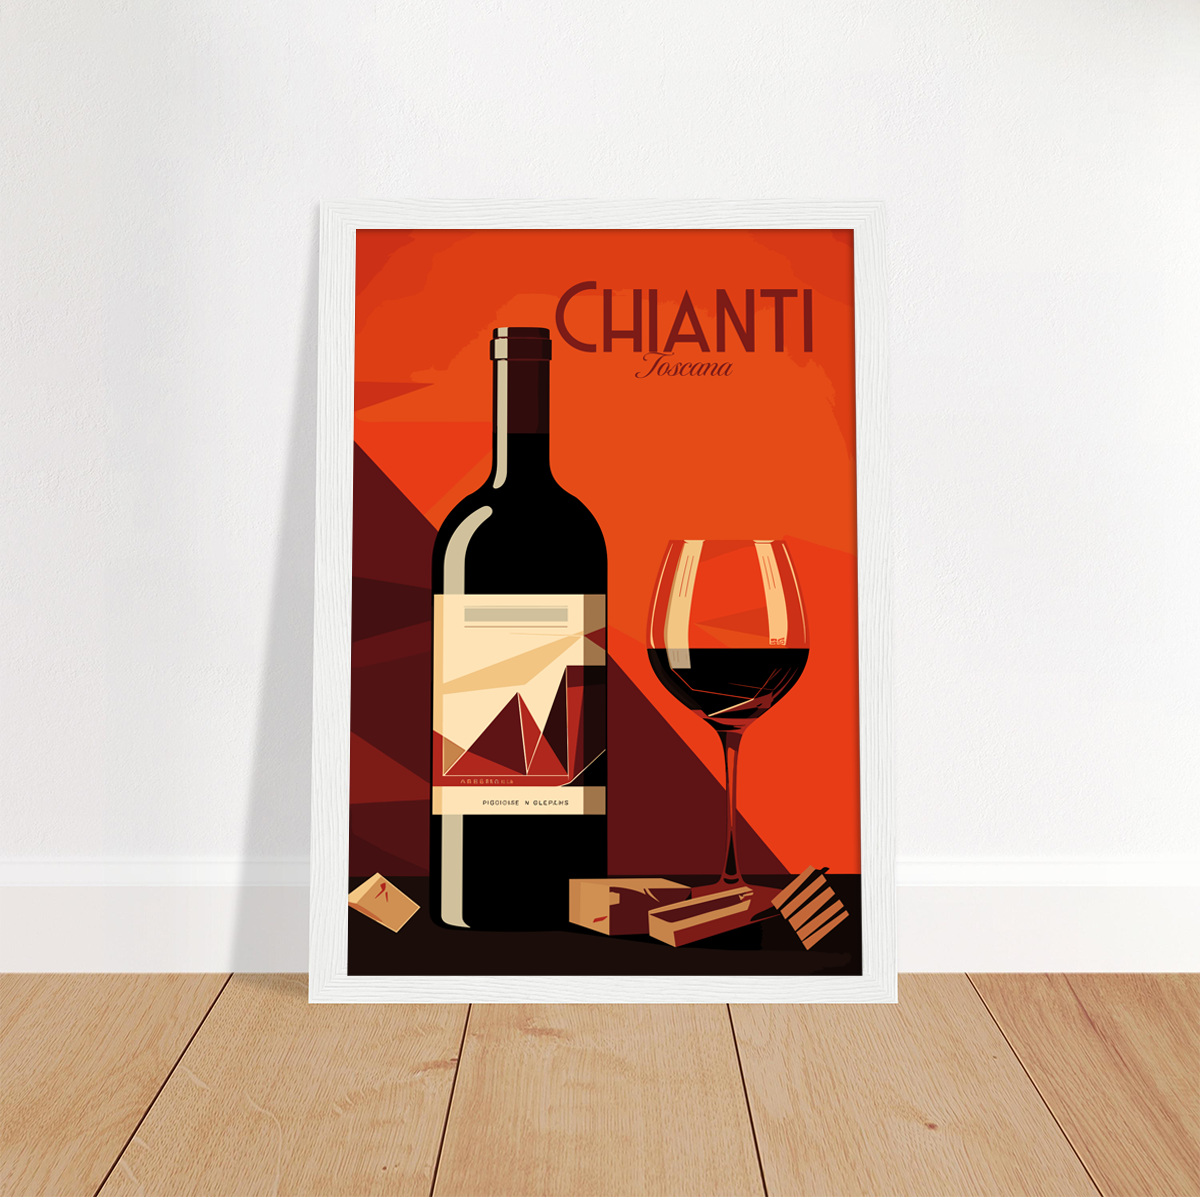 Chianti poster by bon voyage design